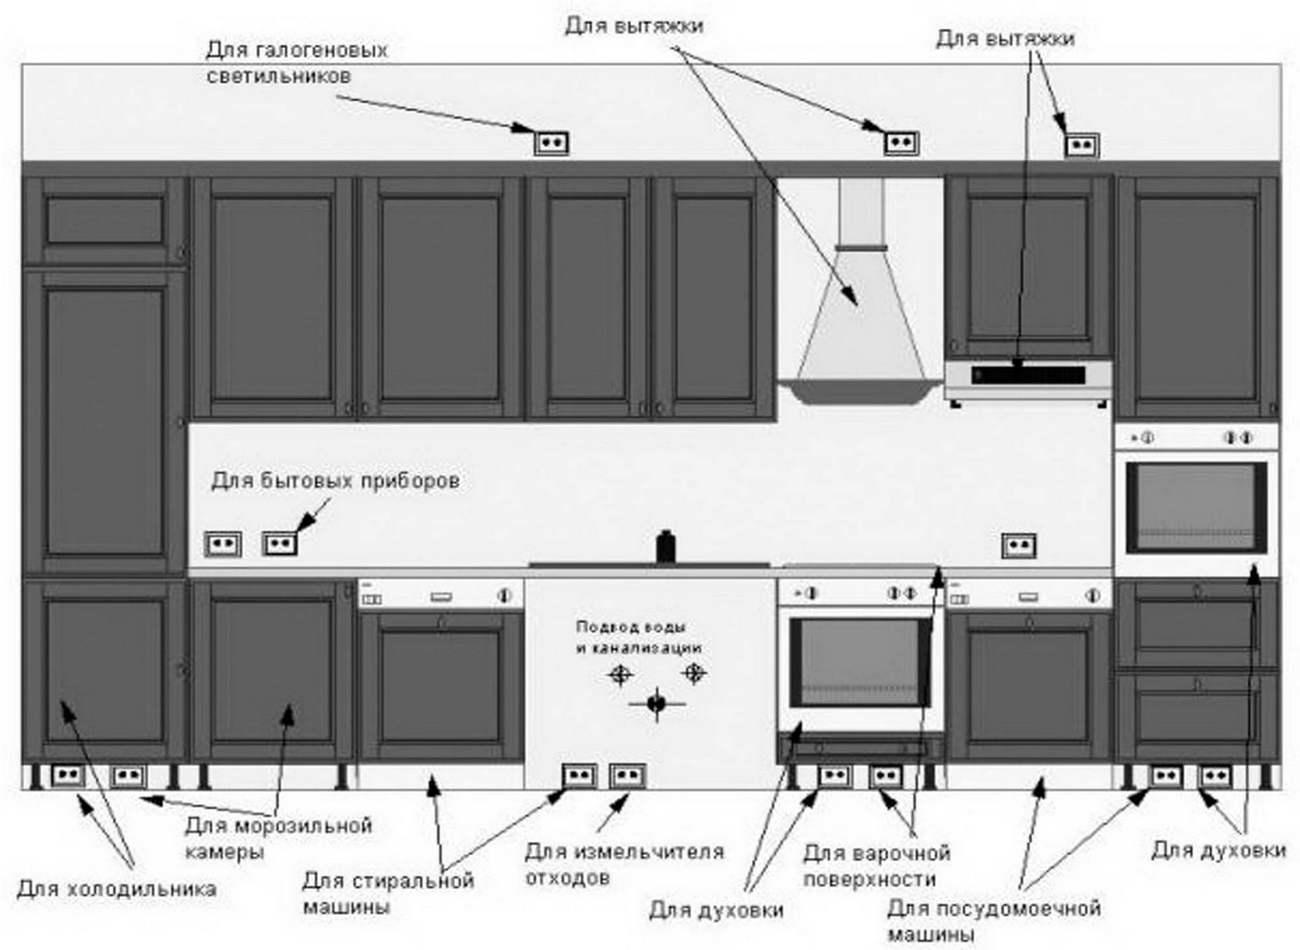 Расчет дизайн-проекта вашей кухни — очень важный этап, поэтому к нему необходимо подойти очень внимательно